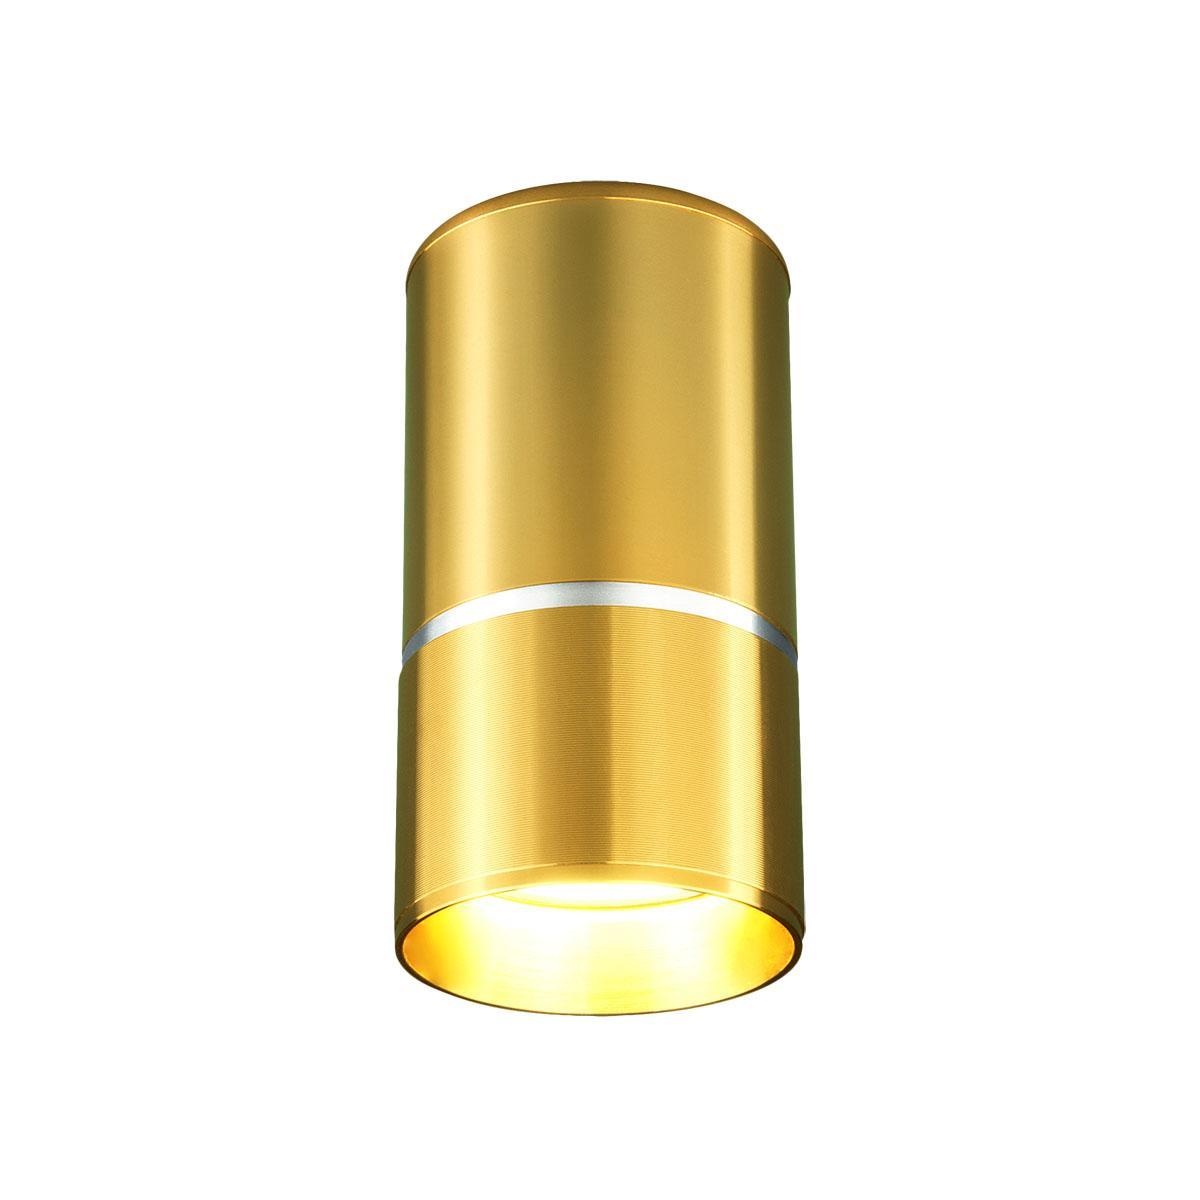 Потолочный светильник Elektrostandard DLN106 GU10 золото 4690389148613 держатель потолочный алюминий золото матовое 2 см